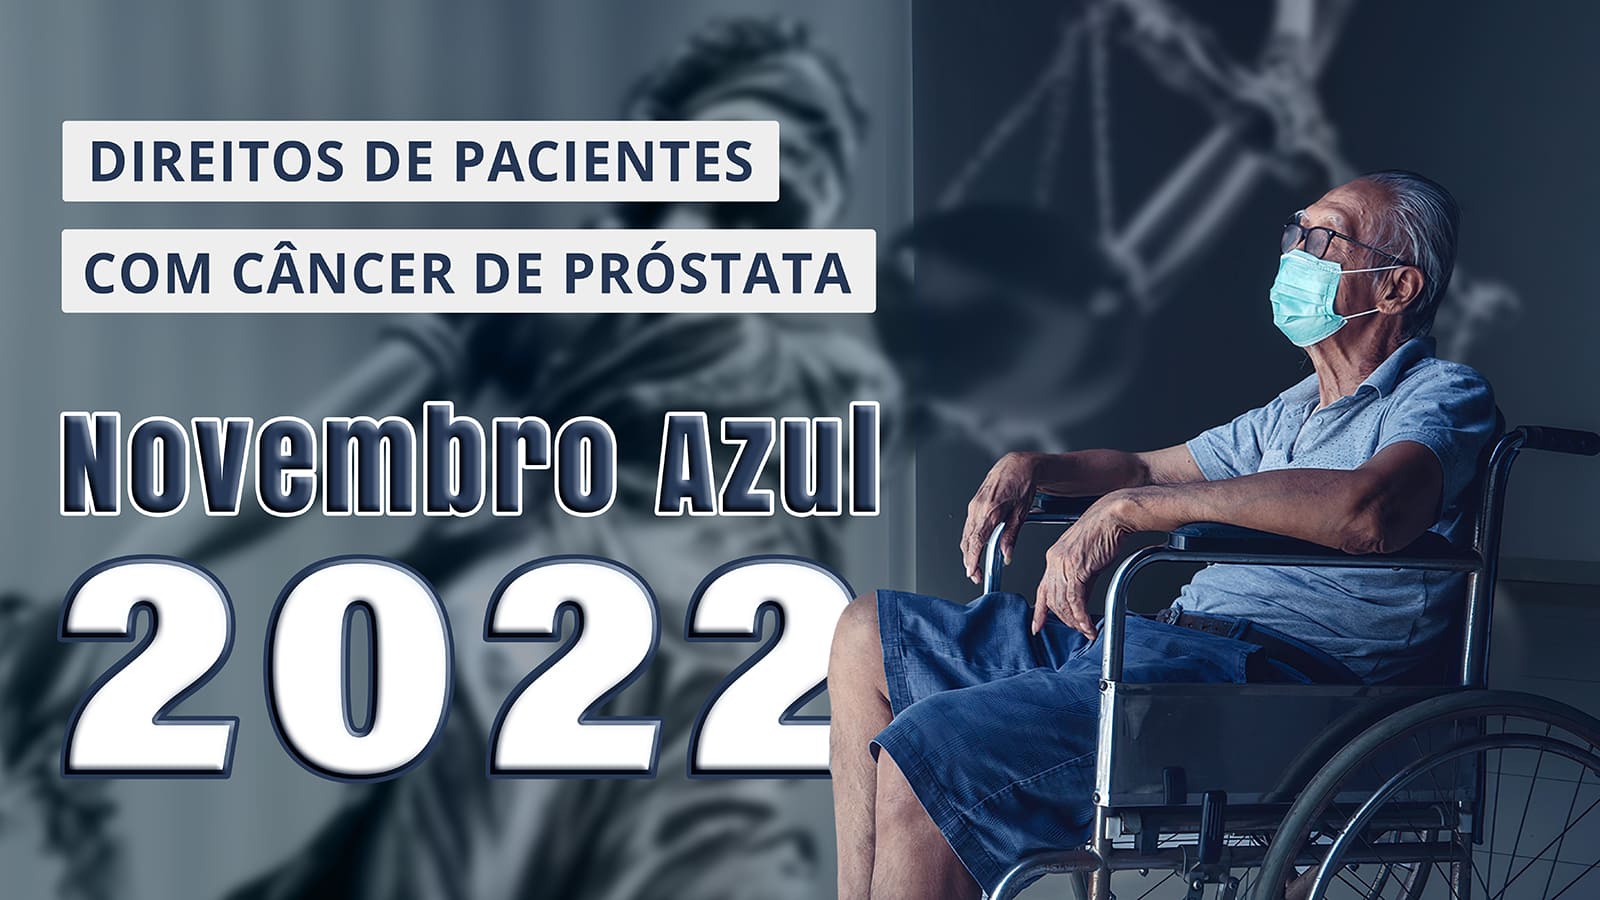 Idoso sentado em cadeira de rodas, sozinho e olhando para a janela. Direitos de pacientes com câncer de próstata, Novembro Azul 2022.